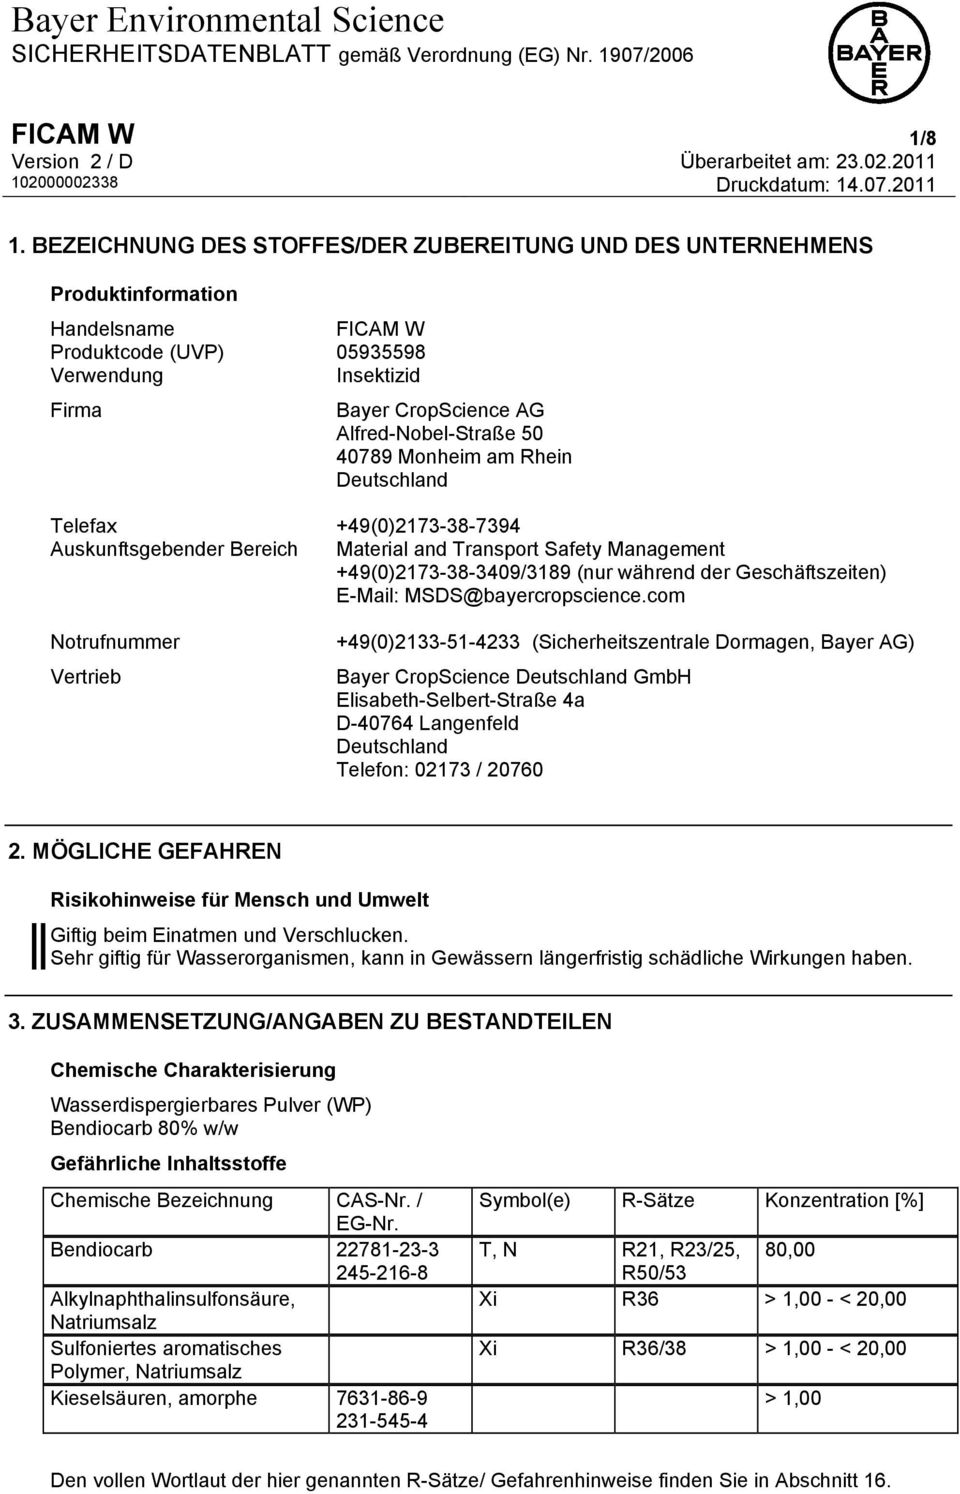 40789 Monheim am Rhein Deutschland Telefax +49(0)2173-38-7394 Auskunftsgebender Bereich Material and Transport Safety Management +49(0)2173-38-3409/3189 (nur während der Geschäftszeiten) E-Mail: